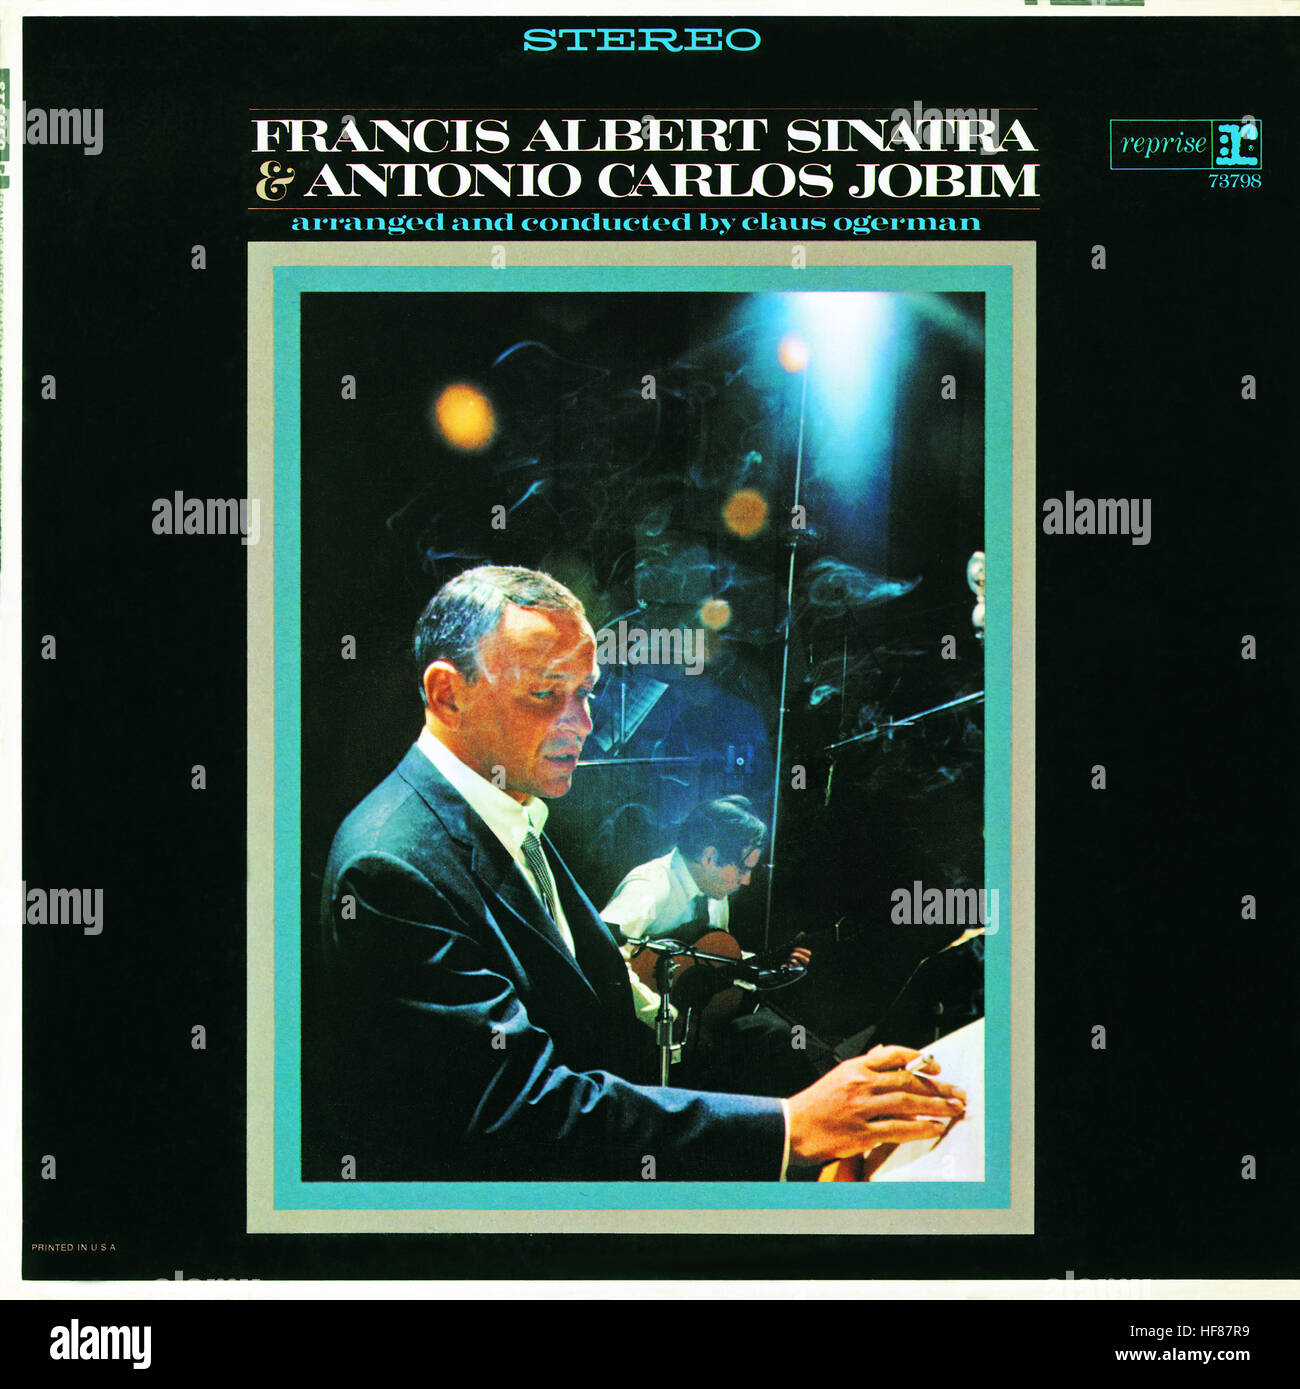 Couverture de l'album 1967 par Fank Sinatra et Antonio Carlos Jobim intitulé ' Francis Albert Sinatra & Antonio Carlos Jobim'. Usage éditorial uniquement. Banque D'Images